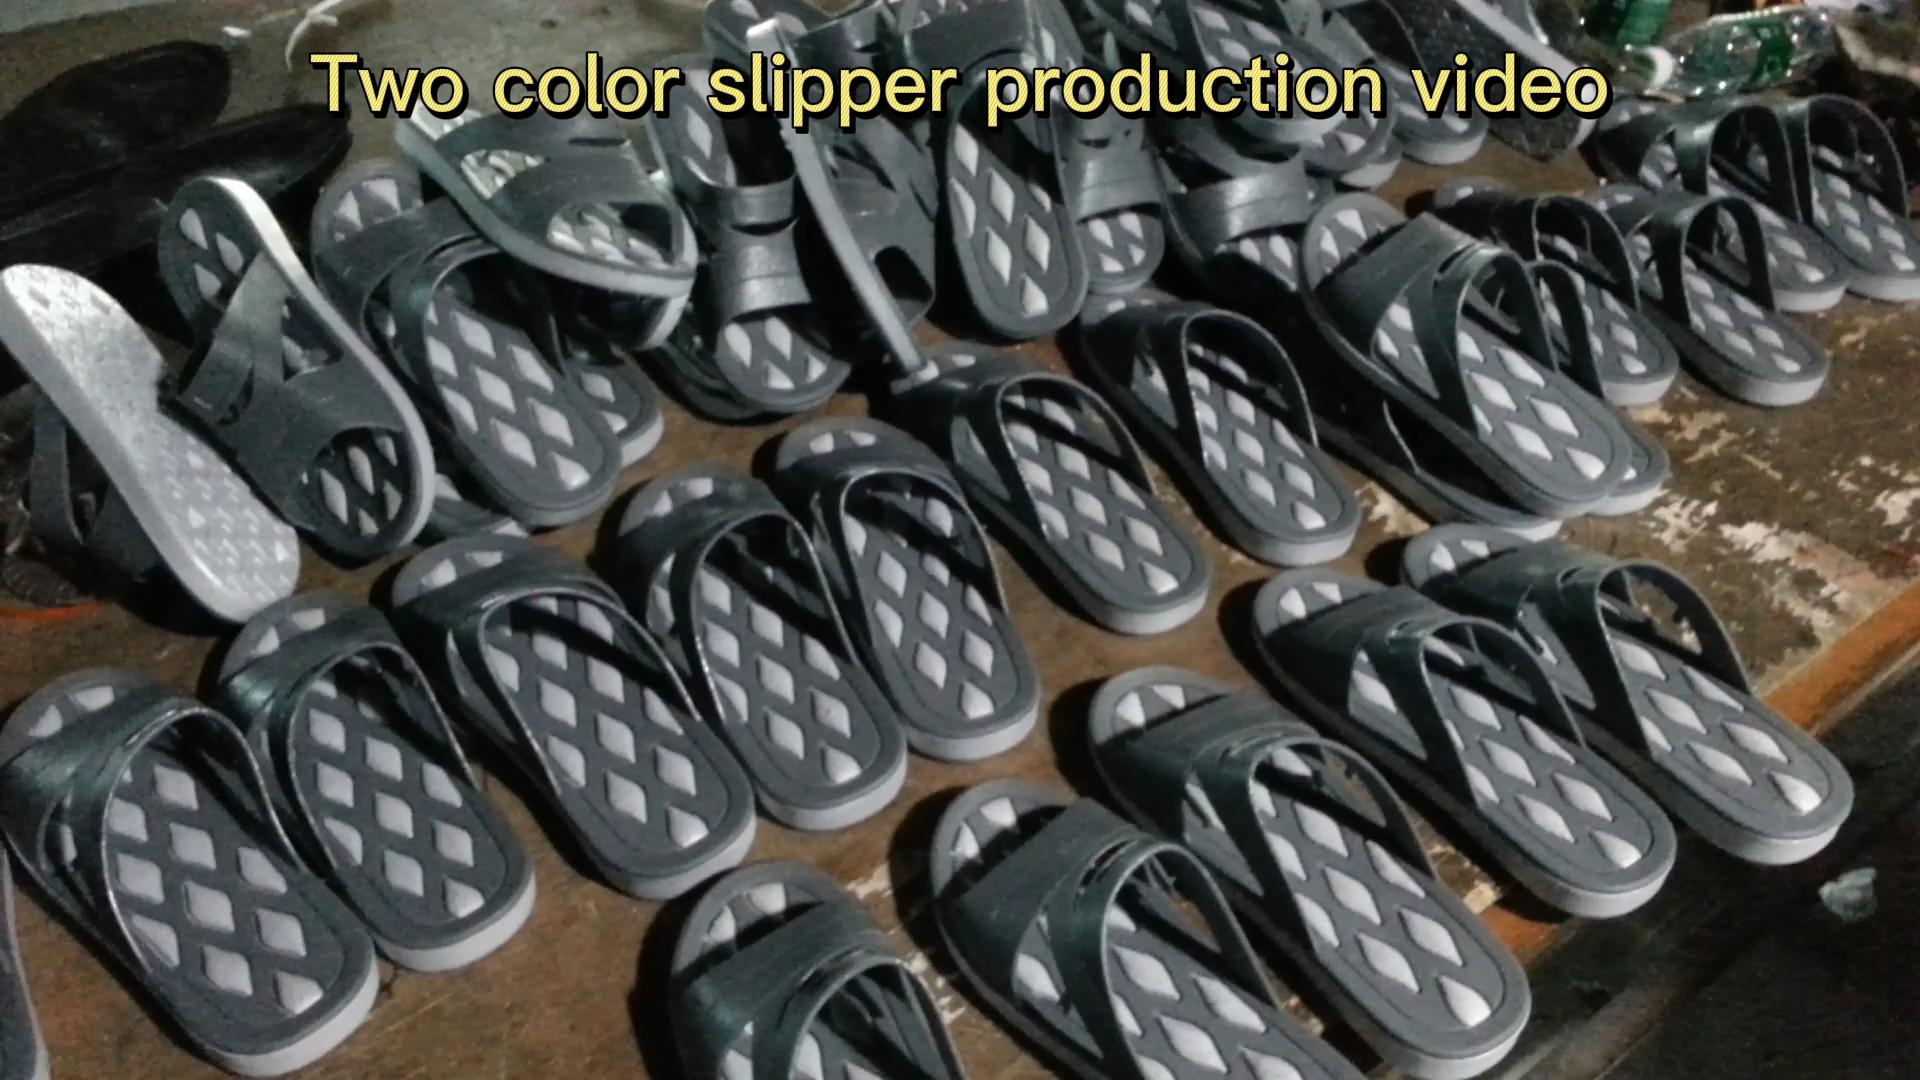 Vídeo de produção de chinelo de duas cores